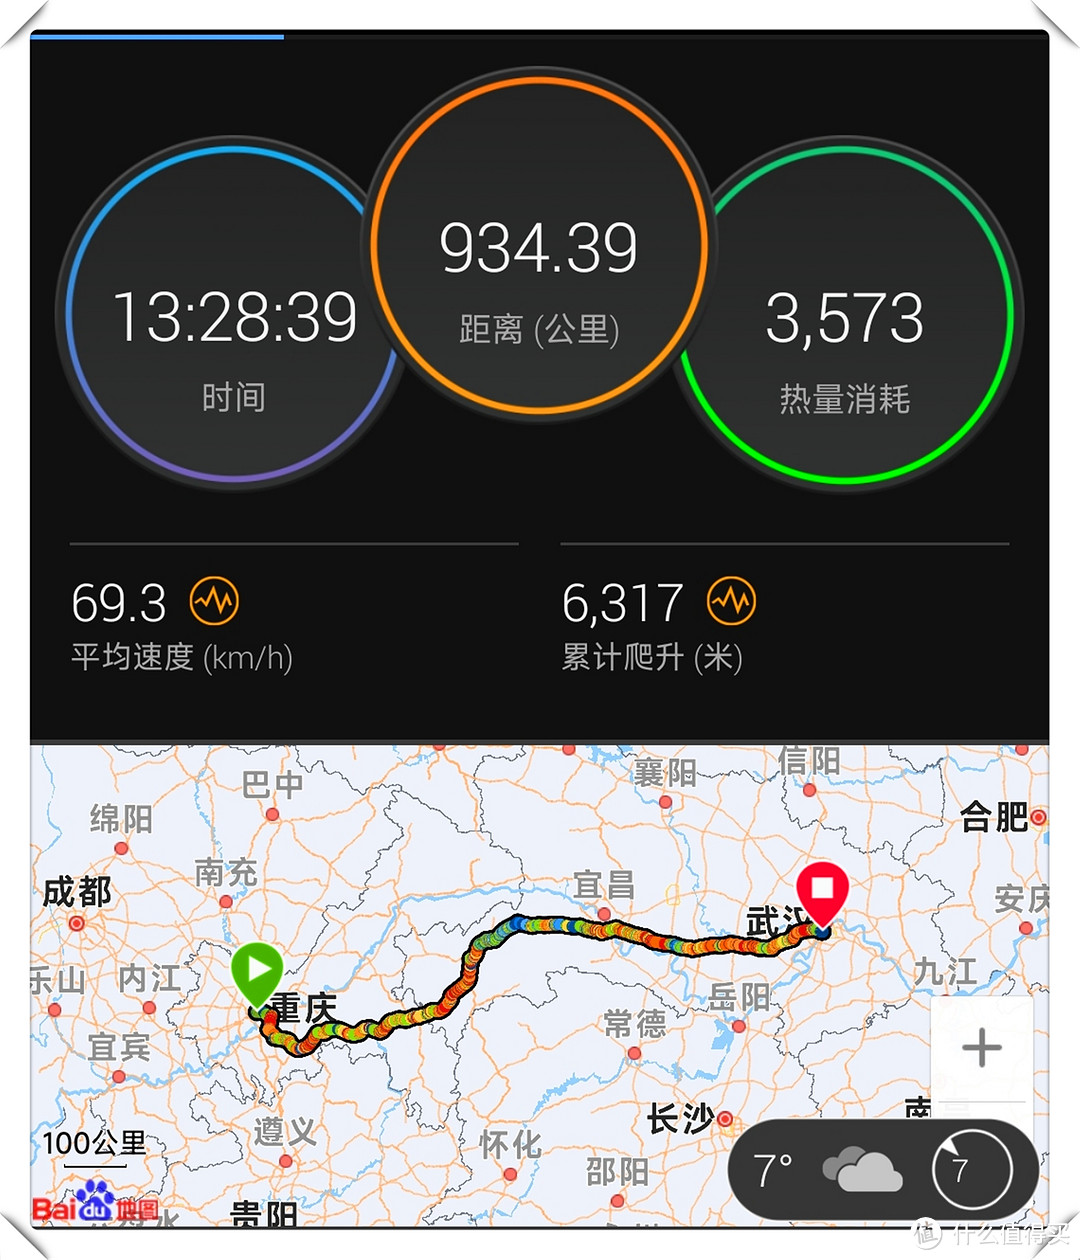 重庆-武汉  15.5 小时